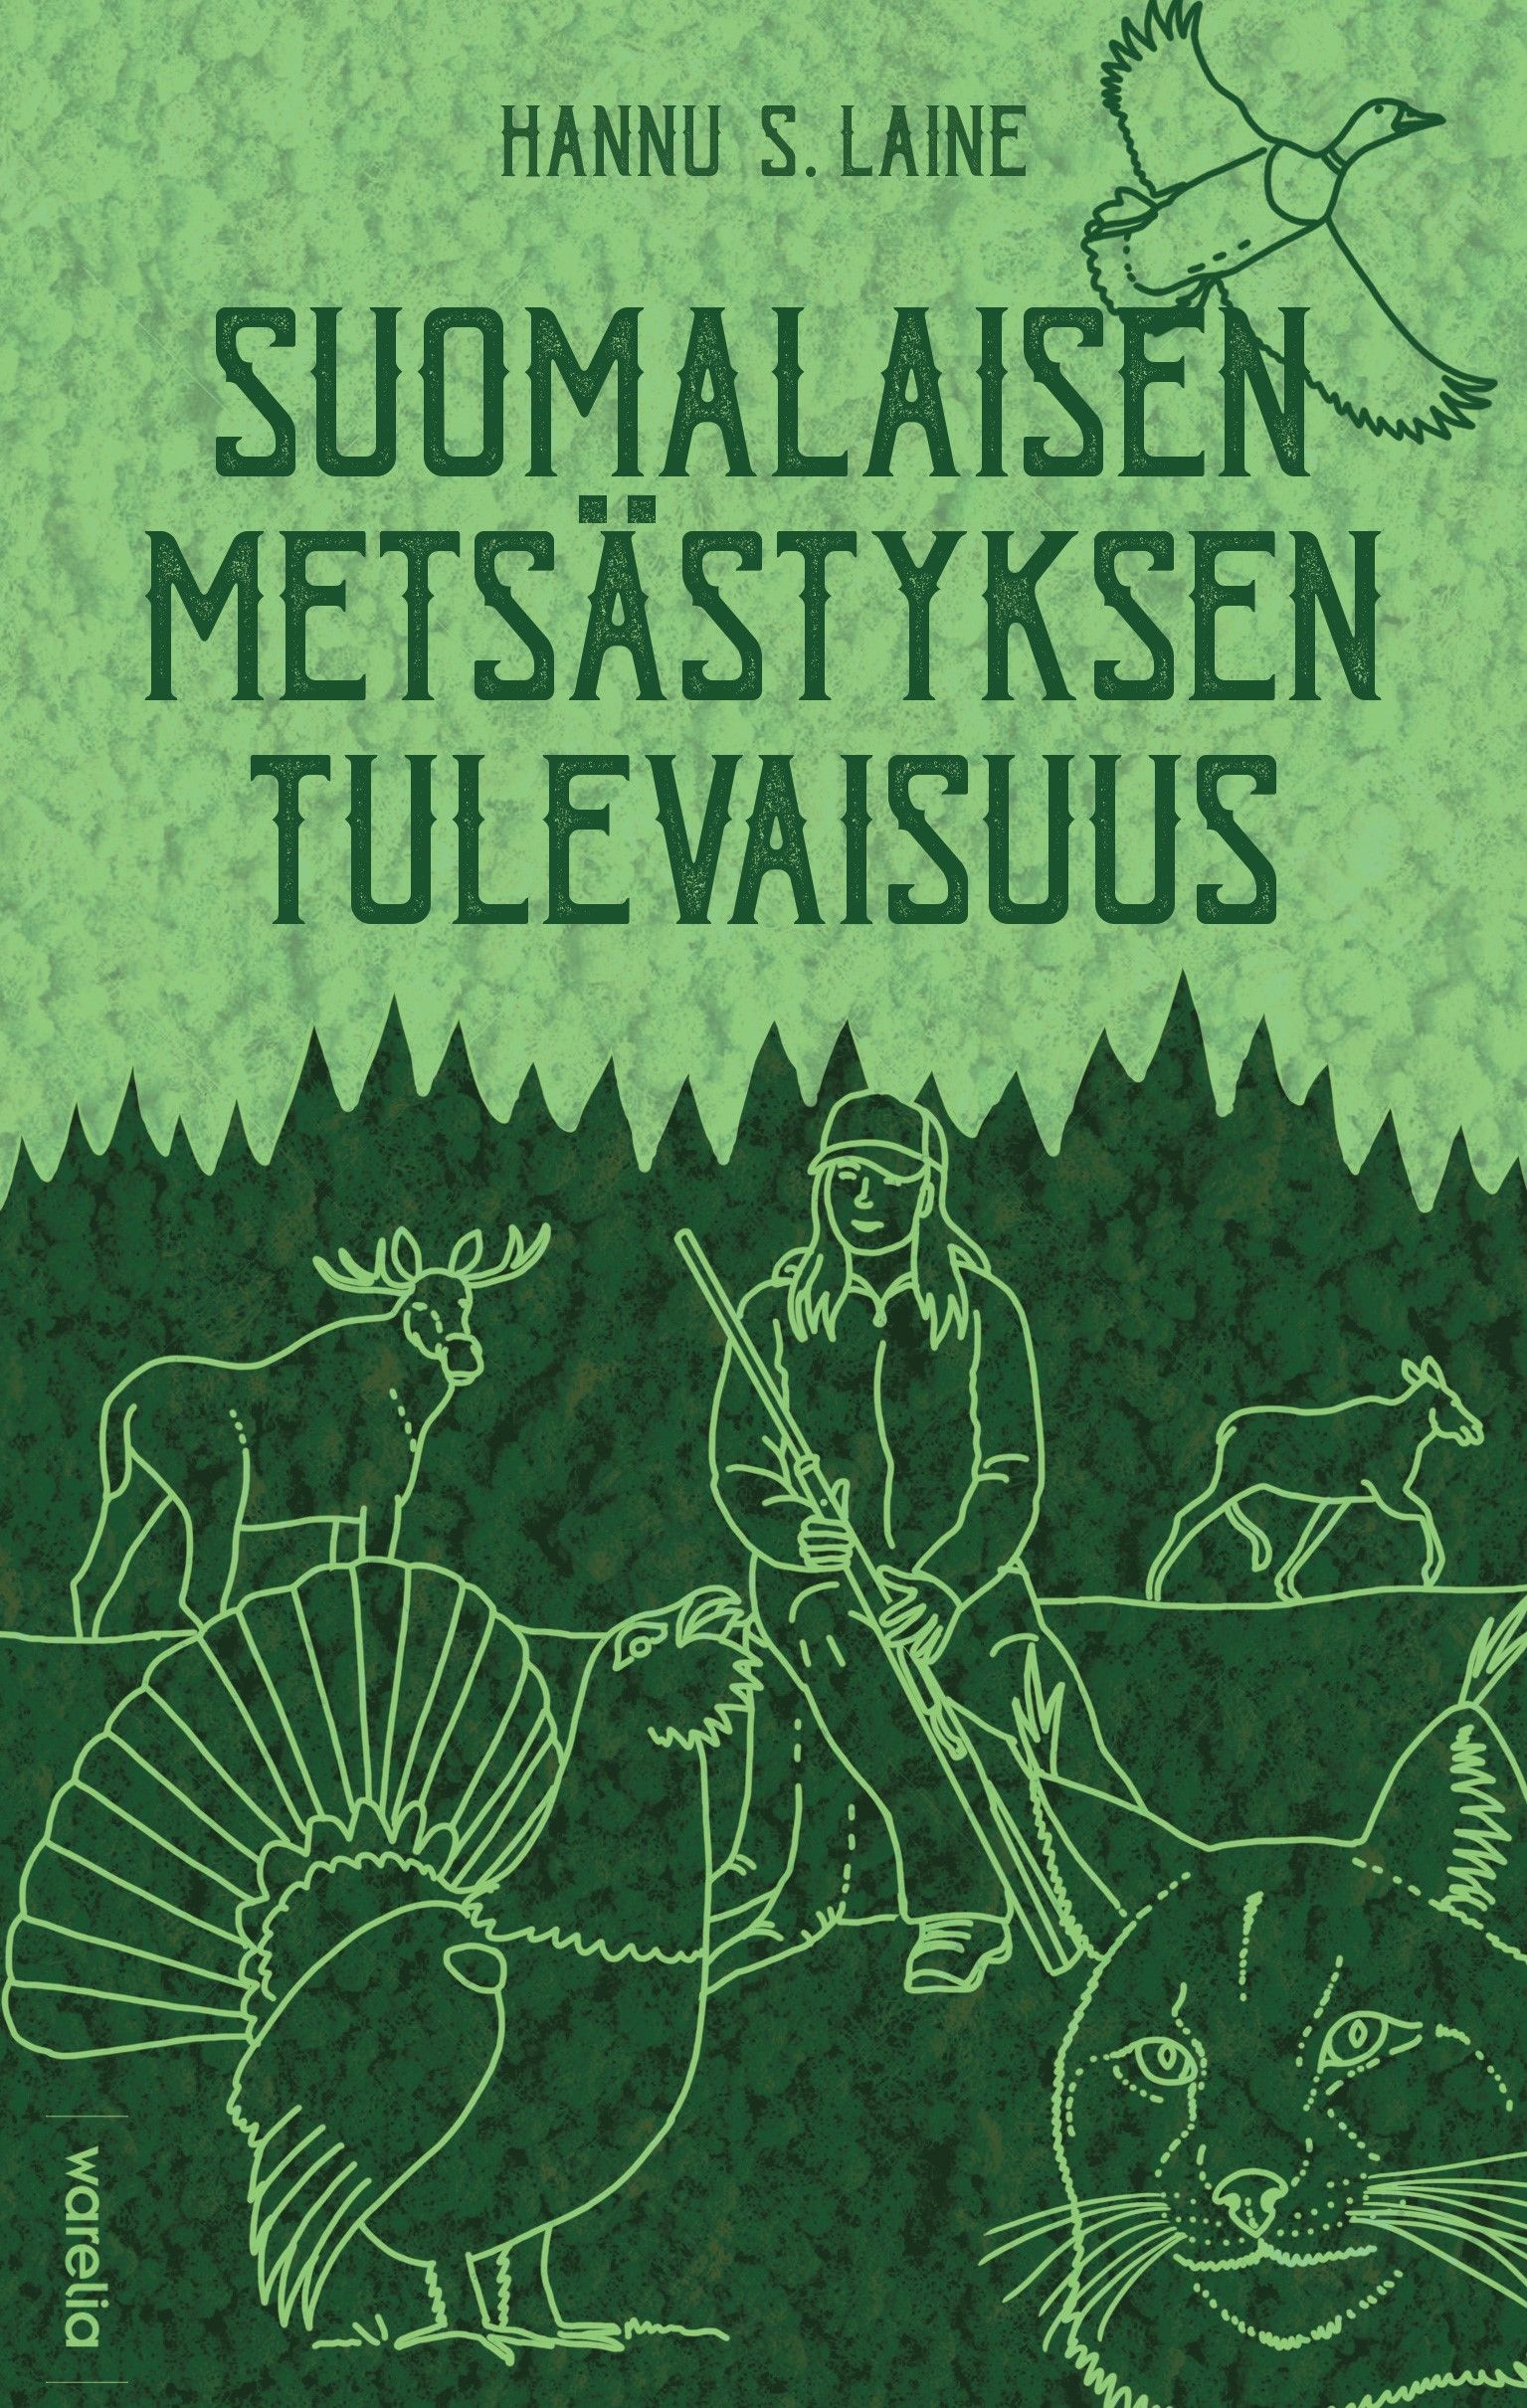 Hannu S. Laine : Suomalaisen metsästyksen tulevaisuus